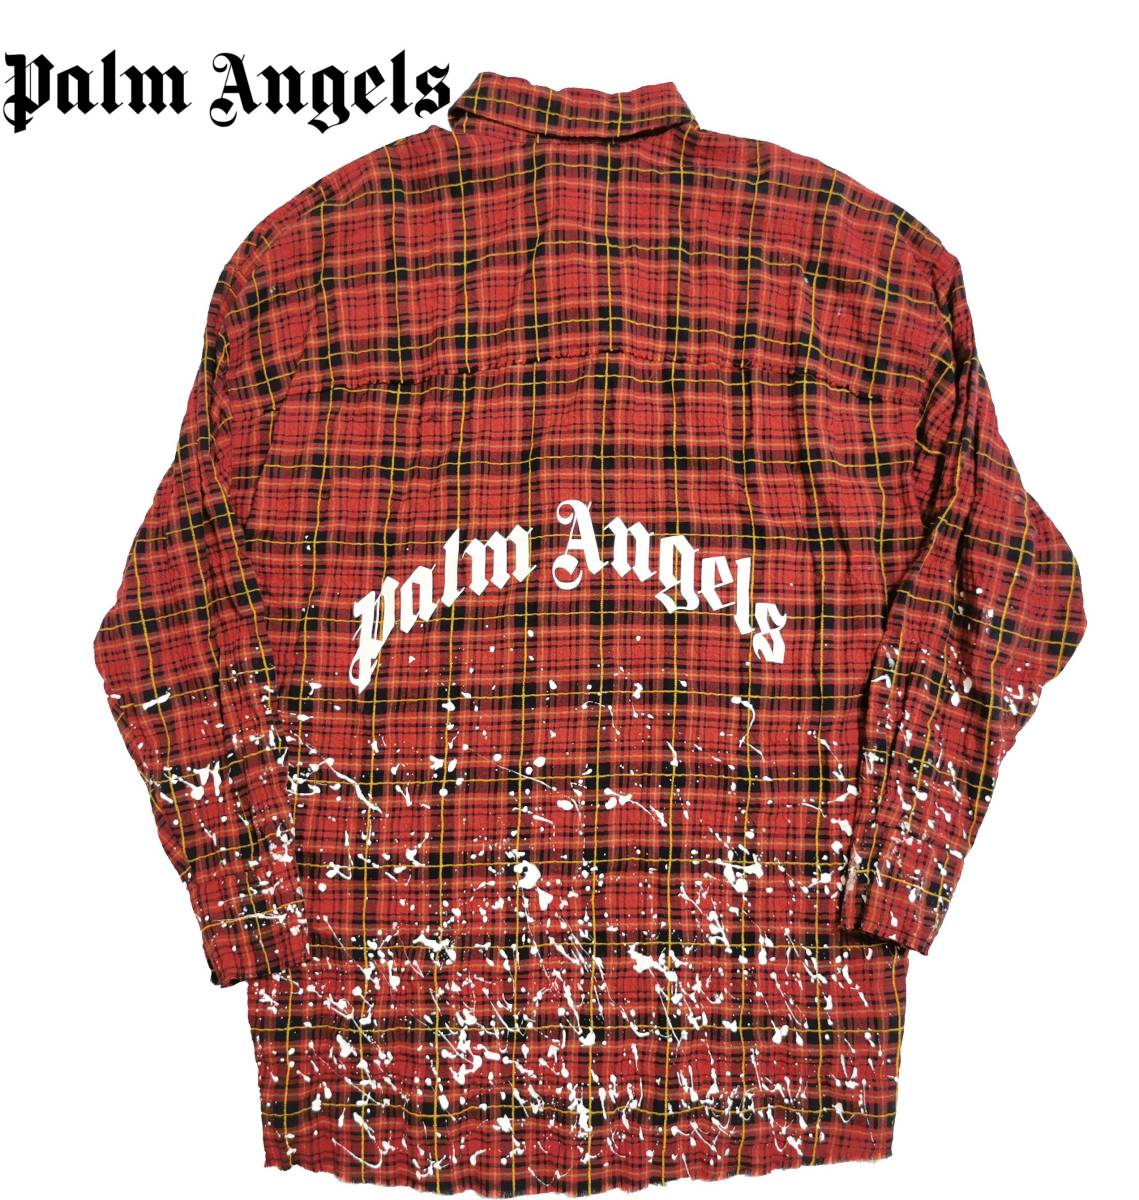 ファッションの palm S パームエンジェルス angels Angels Gジャン パームエンジェルス ロゴ メタル刺繍 テーラードジャケット 46  Palm